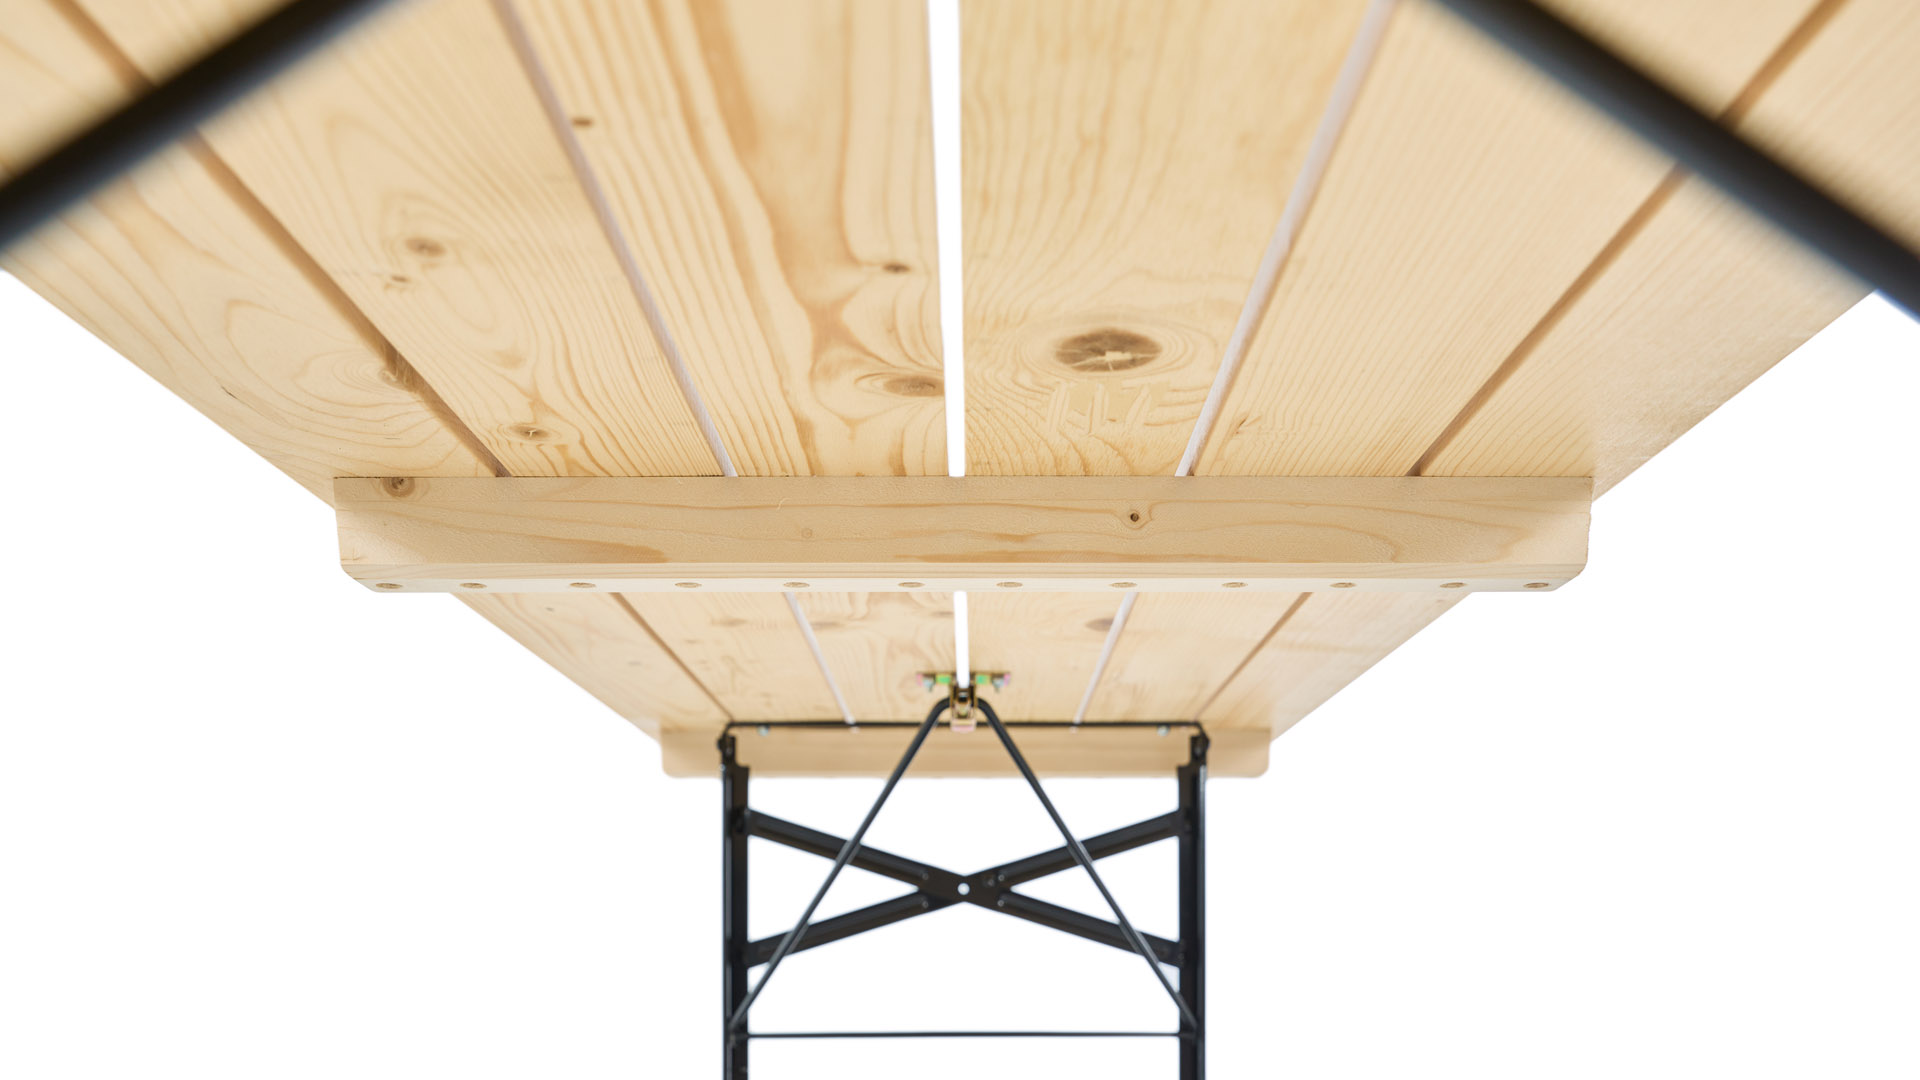 Die Designgarnitur SitDown besitzt ein drittes Stapelholz, sodass die Garnitur beim Stapeln, Transportieren und Auseinandernehmen nicht zerkratzt werden und länger schön bleiben.